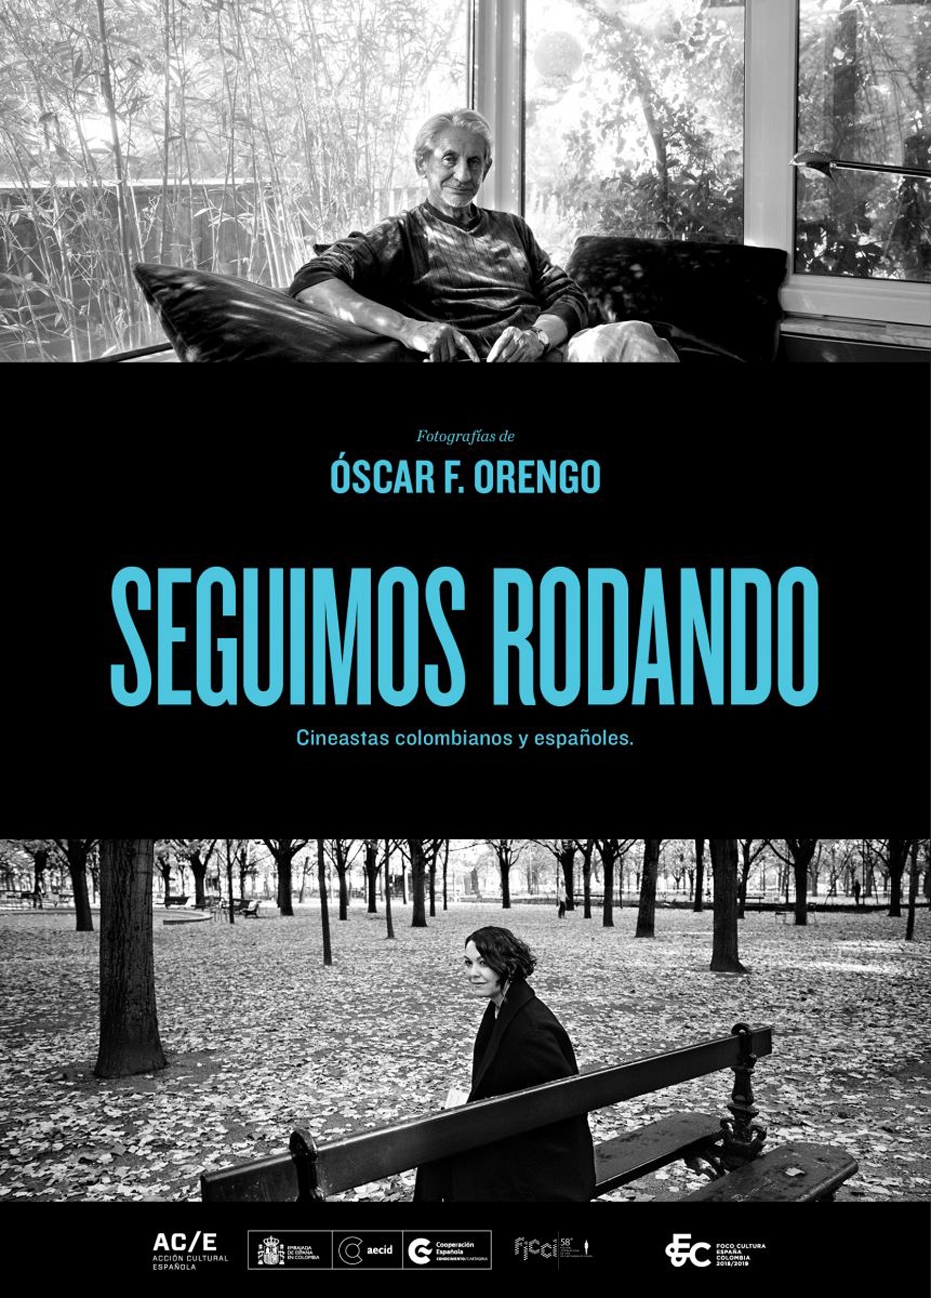 Exposición 'Seguimos rodando'. Cineastas colombianos y españoles. Fotografías de Óscar F. Orengo